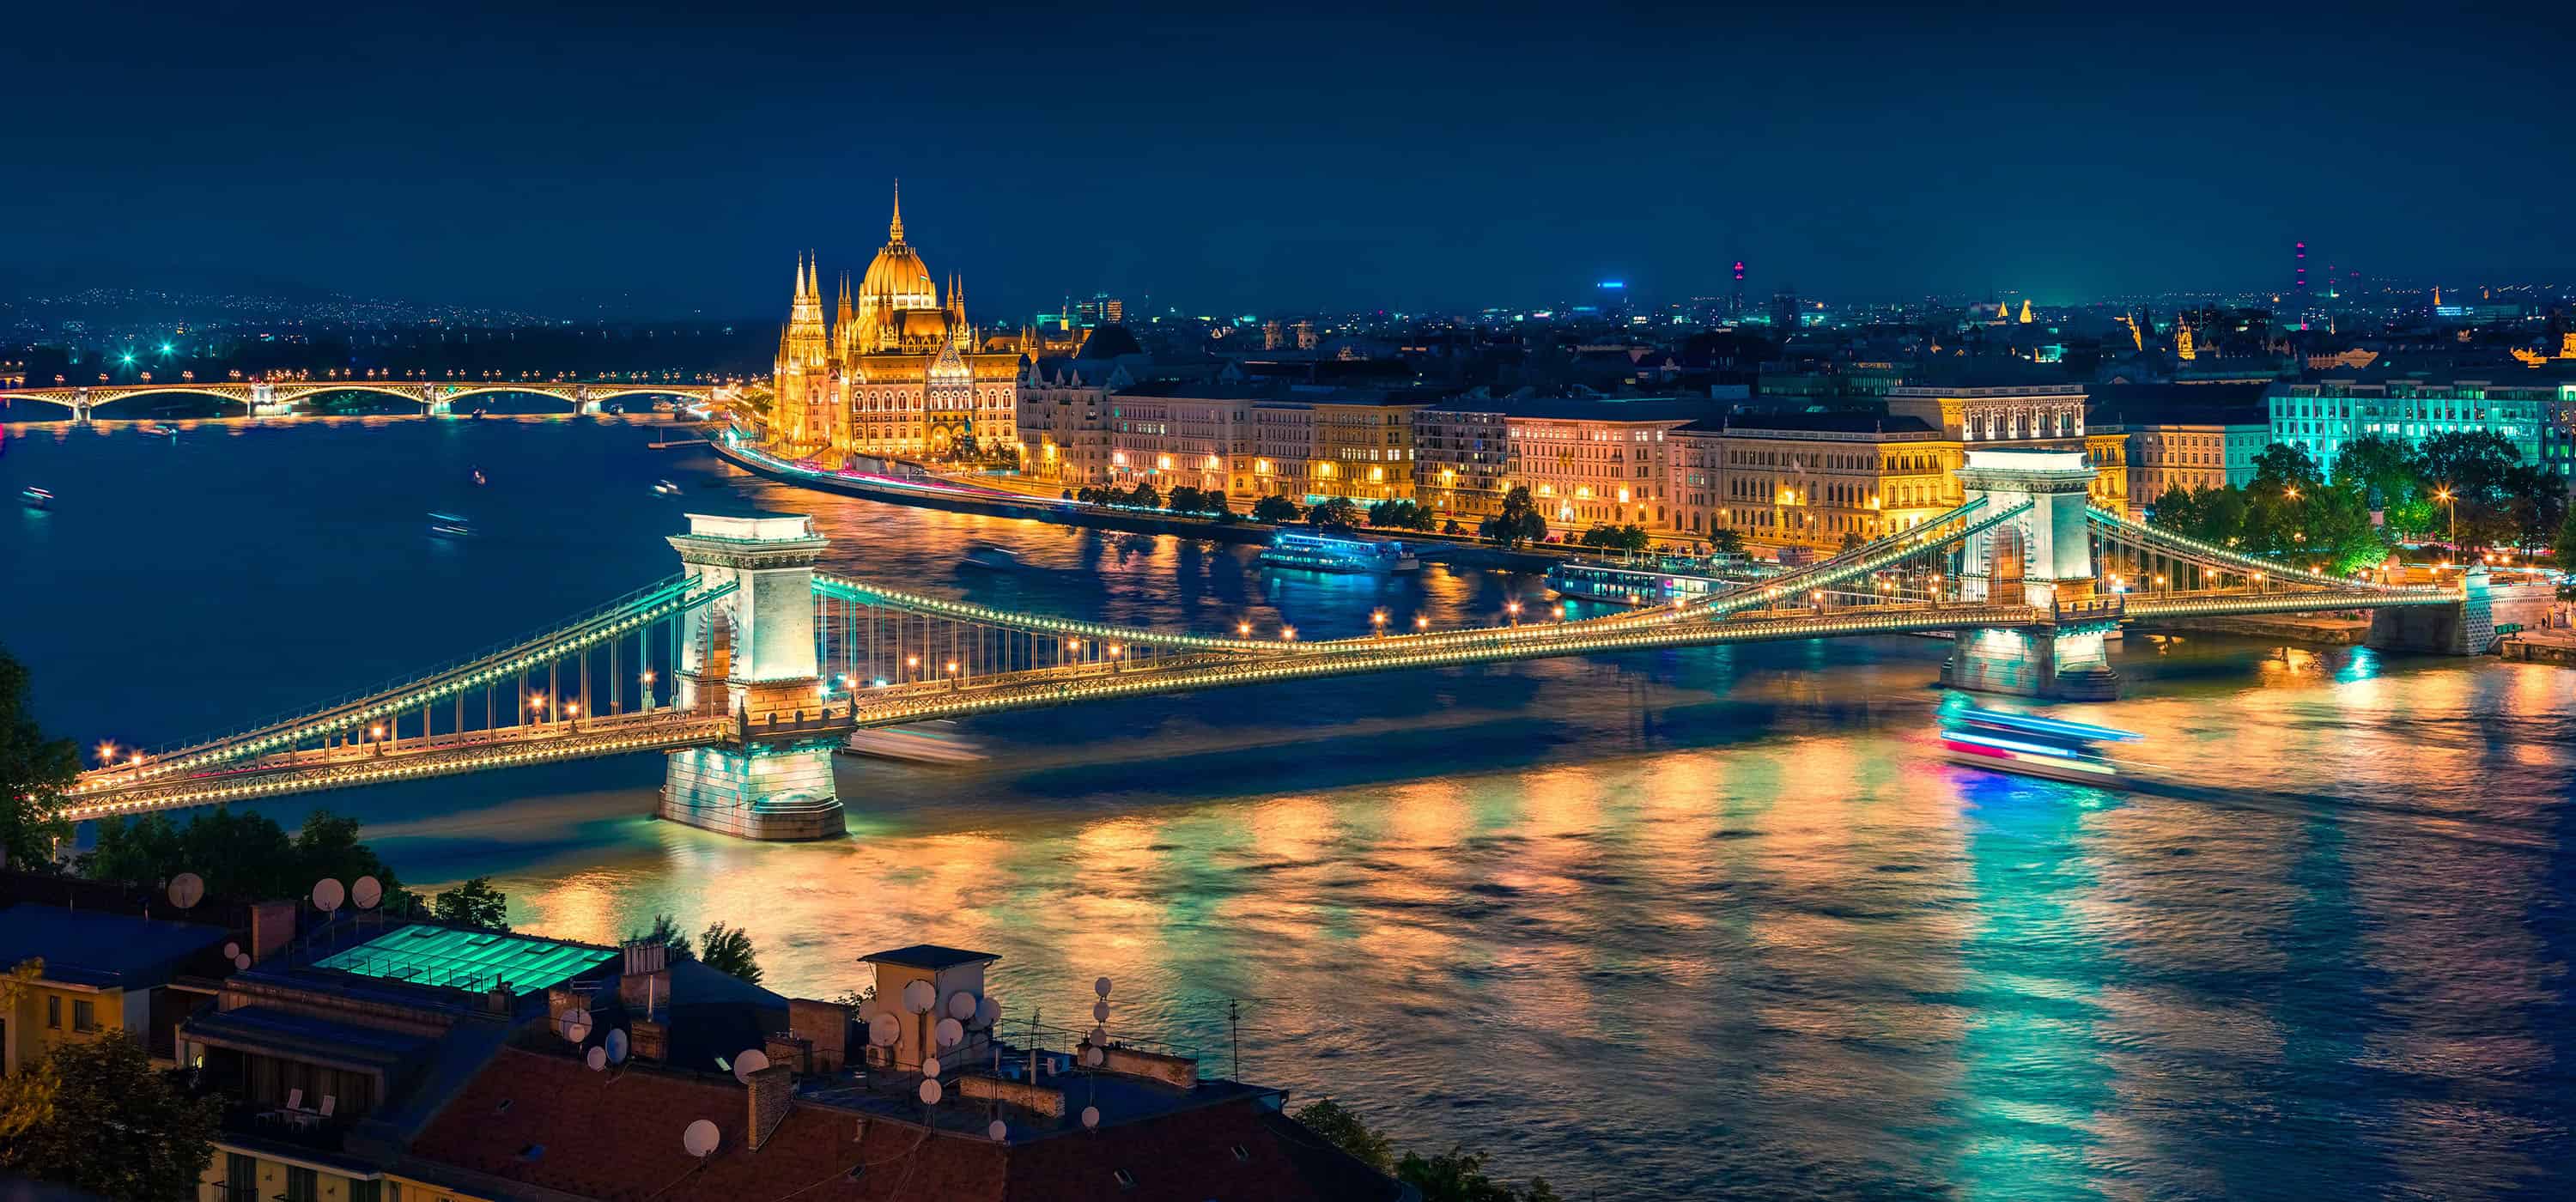 Budapešť “to do list” alebo čo by ste tu mali vidieť a zažiť